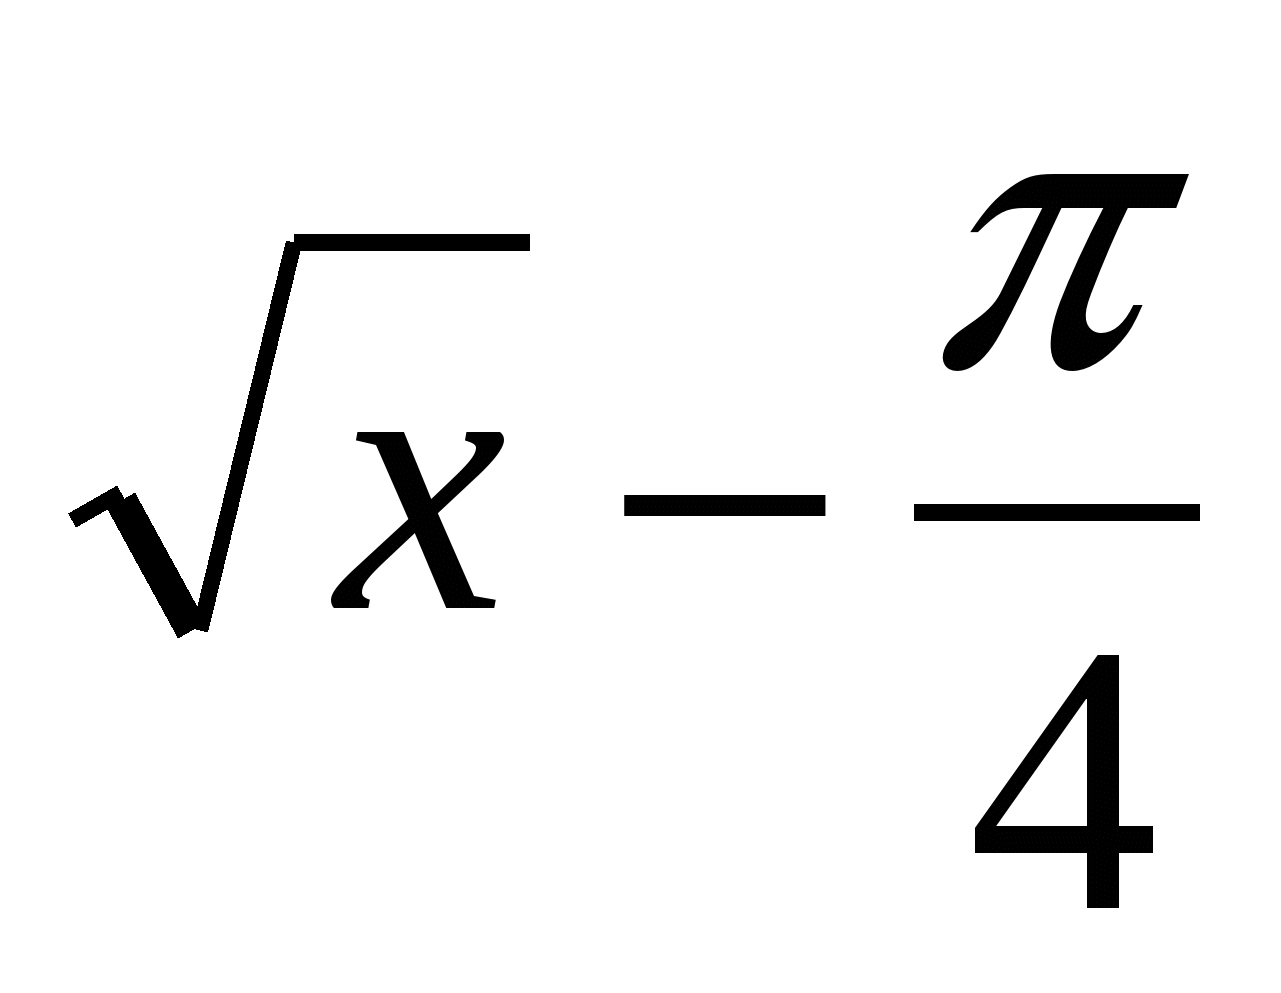 Конспект урока по математике на тему Решение тригонометрических уравнений (10 класс)